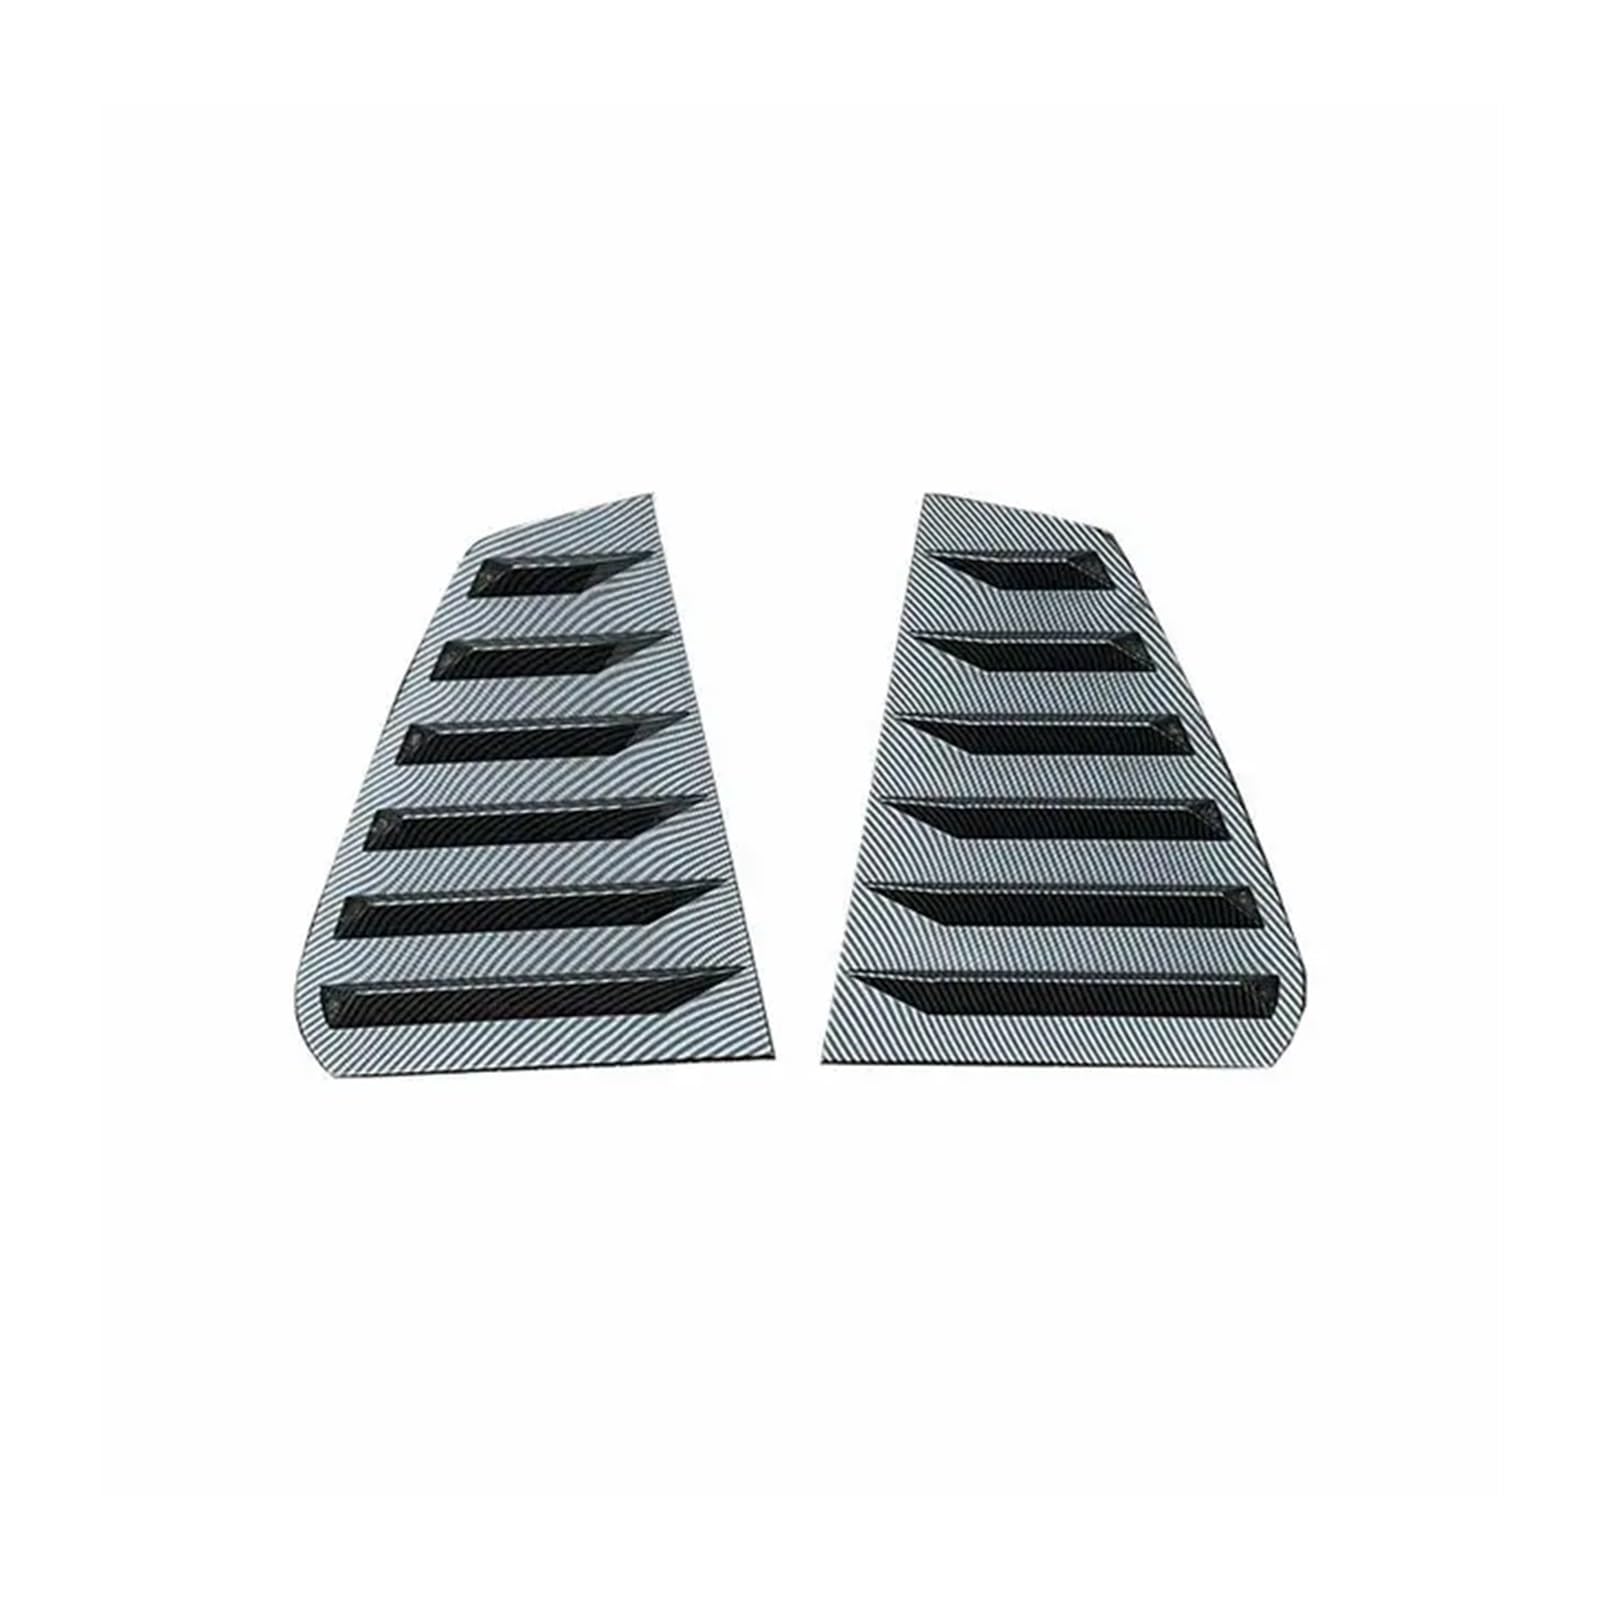 2 Stück glänzend schwarz/Kohlefaser-Lamellen for die hintere Seitenscheibe, Lüftungsschlitze, Blendenabdeckung, kompatibel mit VW -Golf MK7 MK7.5 GTI R 2014-2019(Carbon Fiber Look) von KDMOWHON